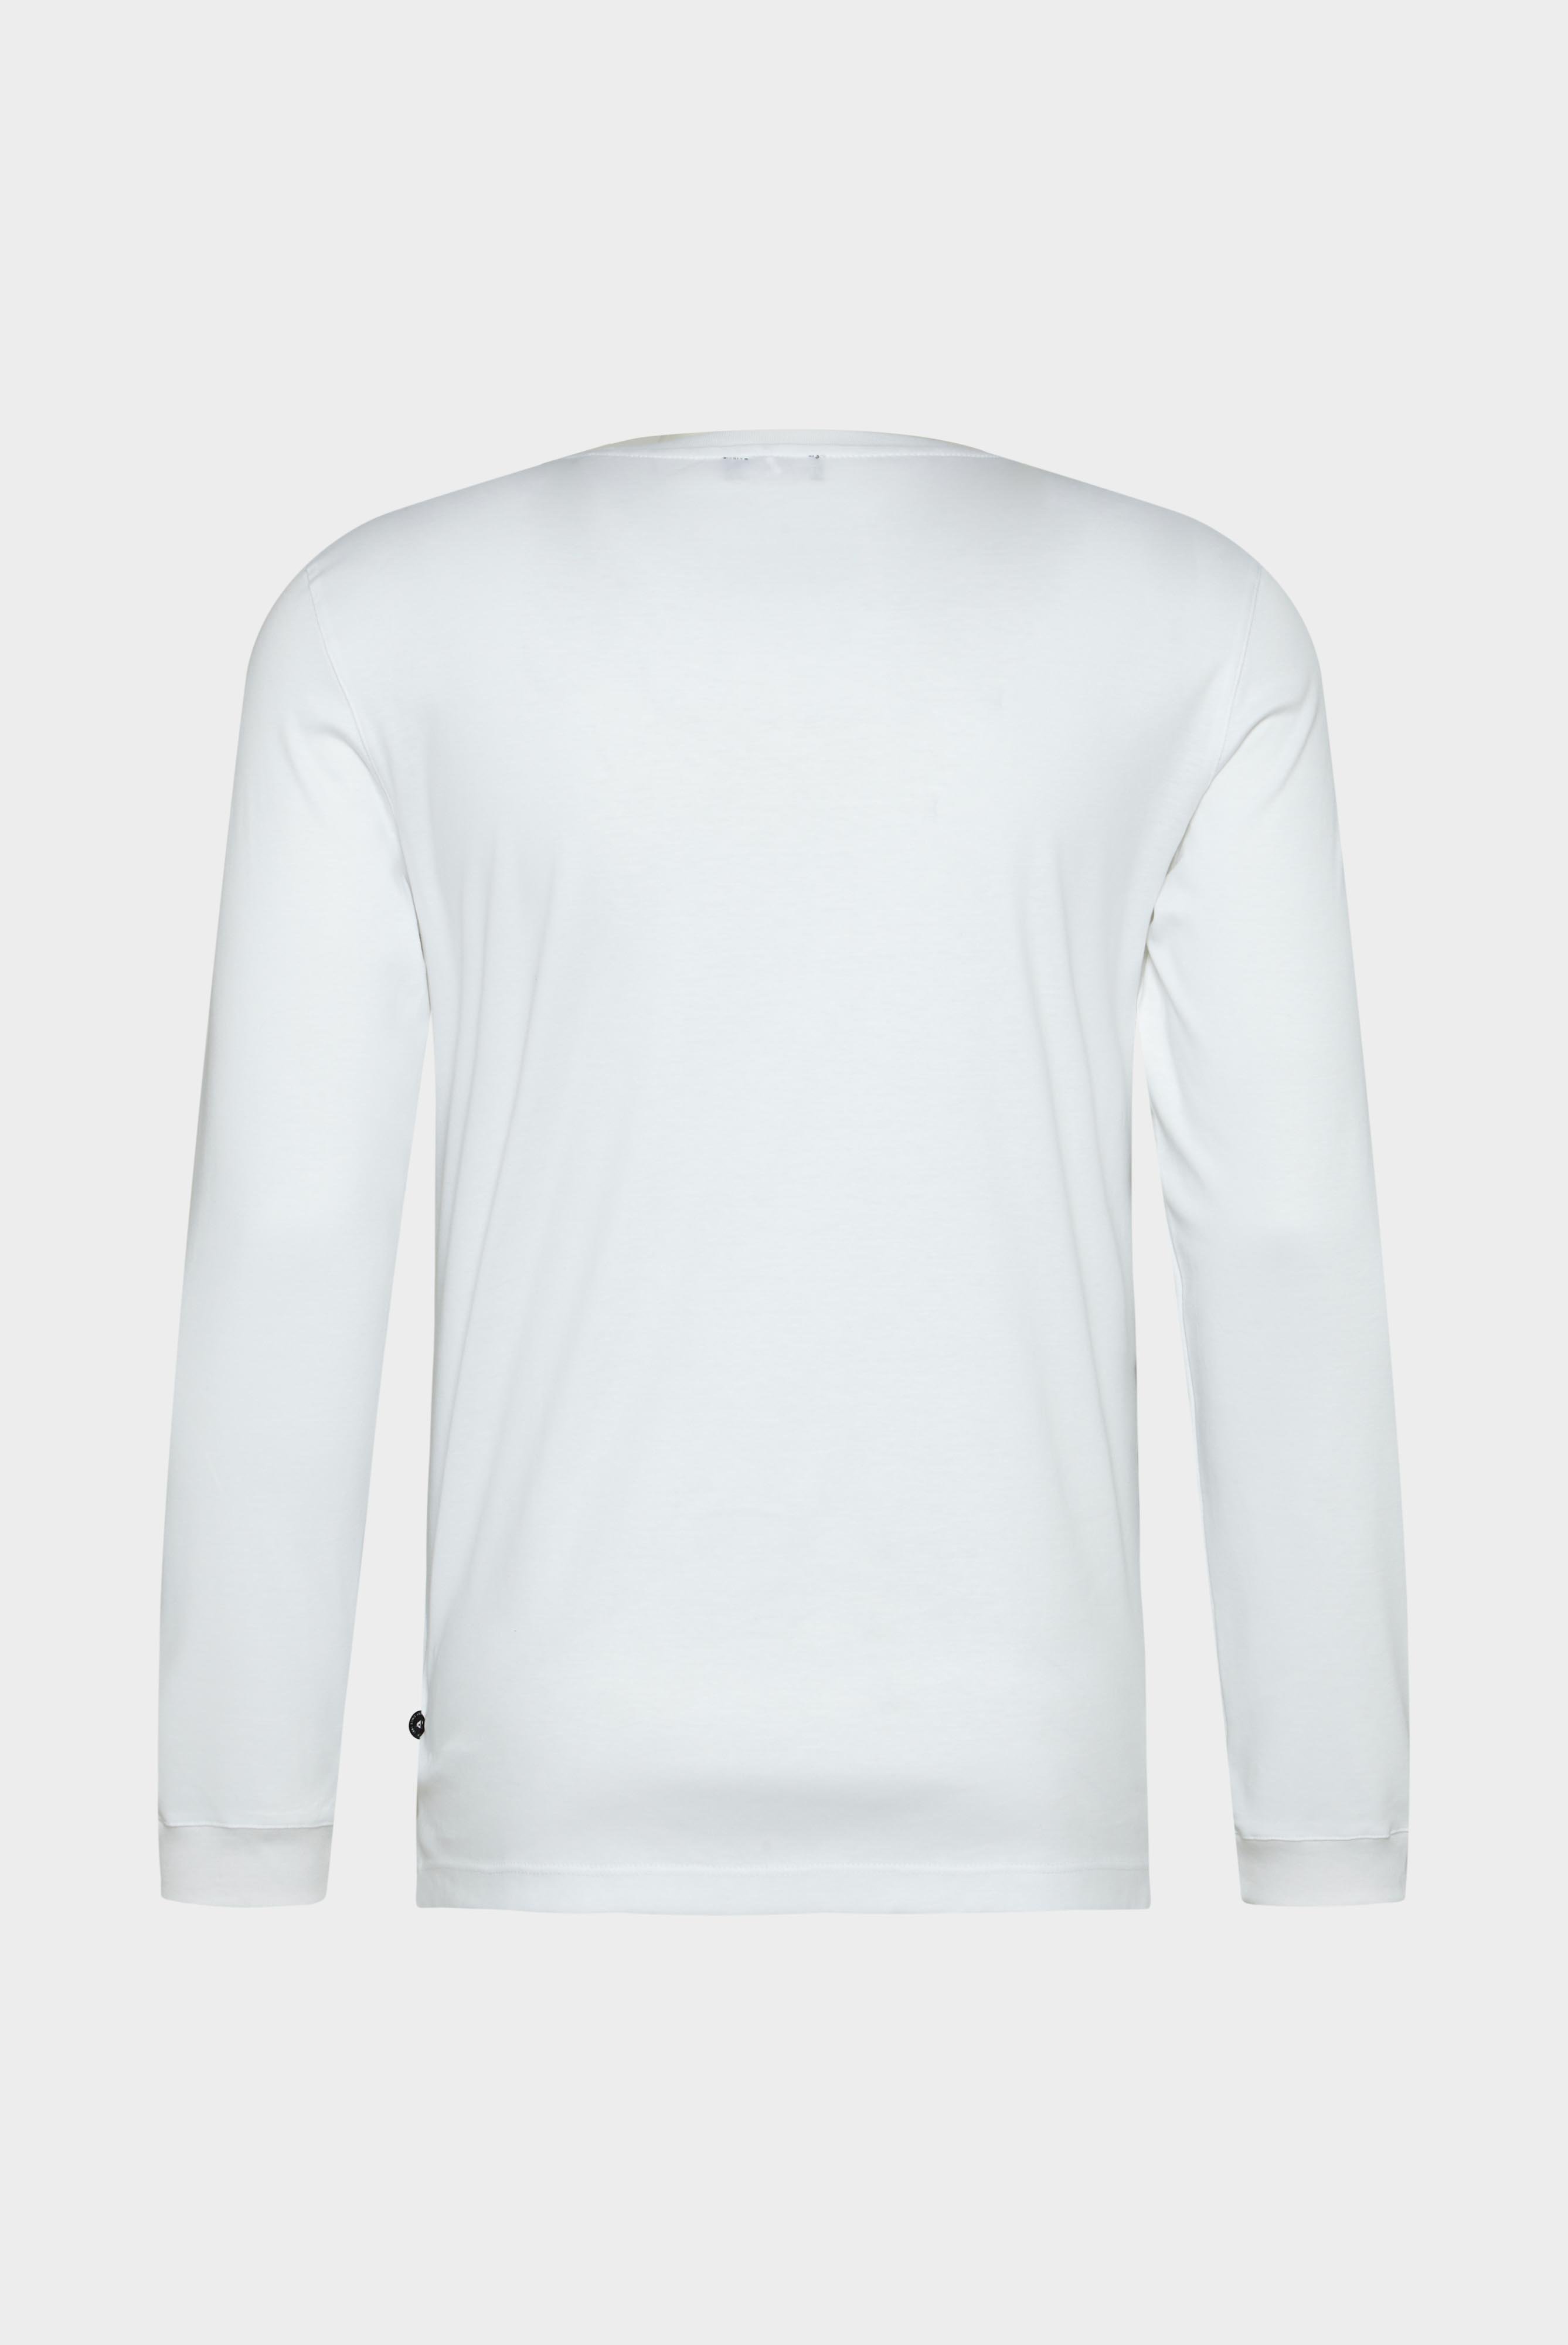 T-Shirts+Longsleeve Swiss Cotton Jersey Crew Neck T-Shirt+20.1718.UX.180031.000.XL